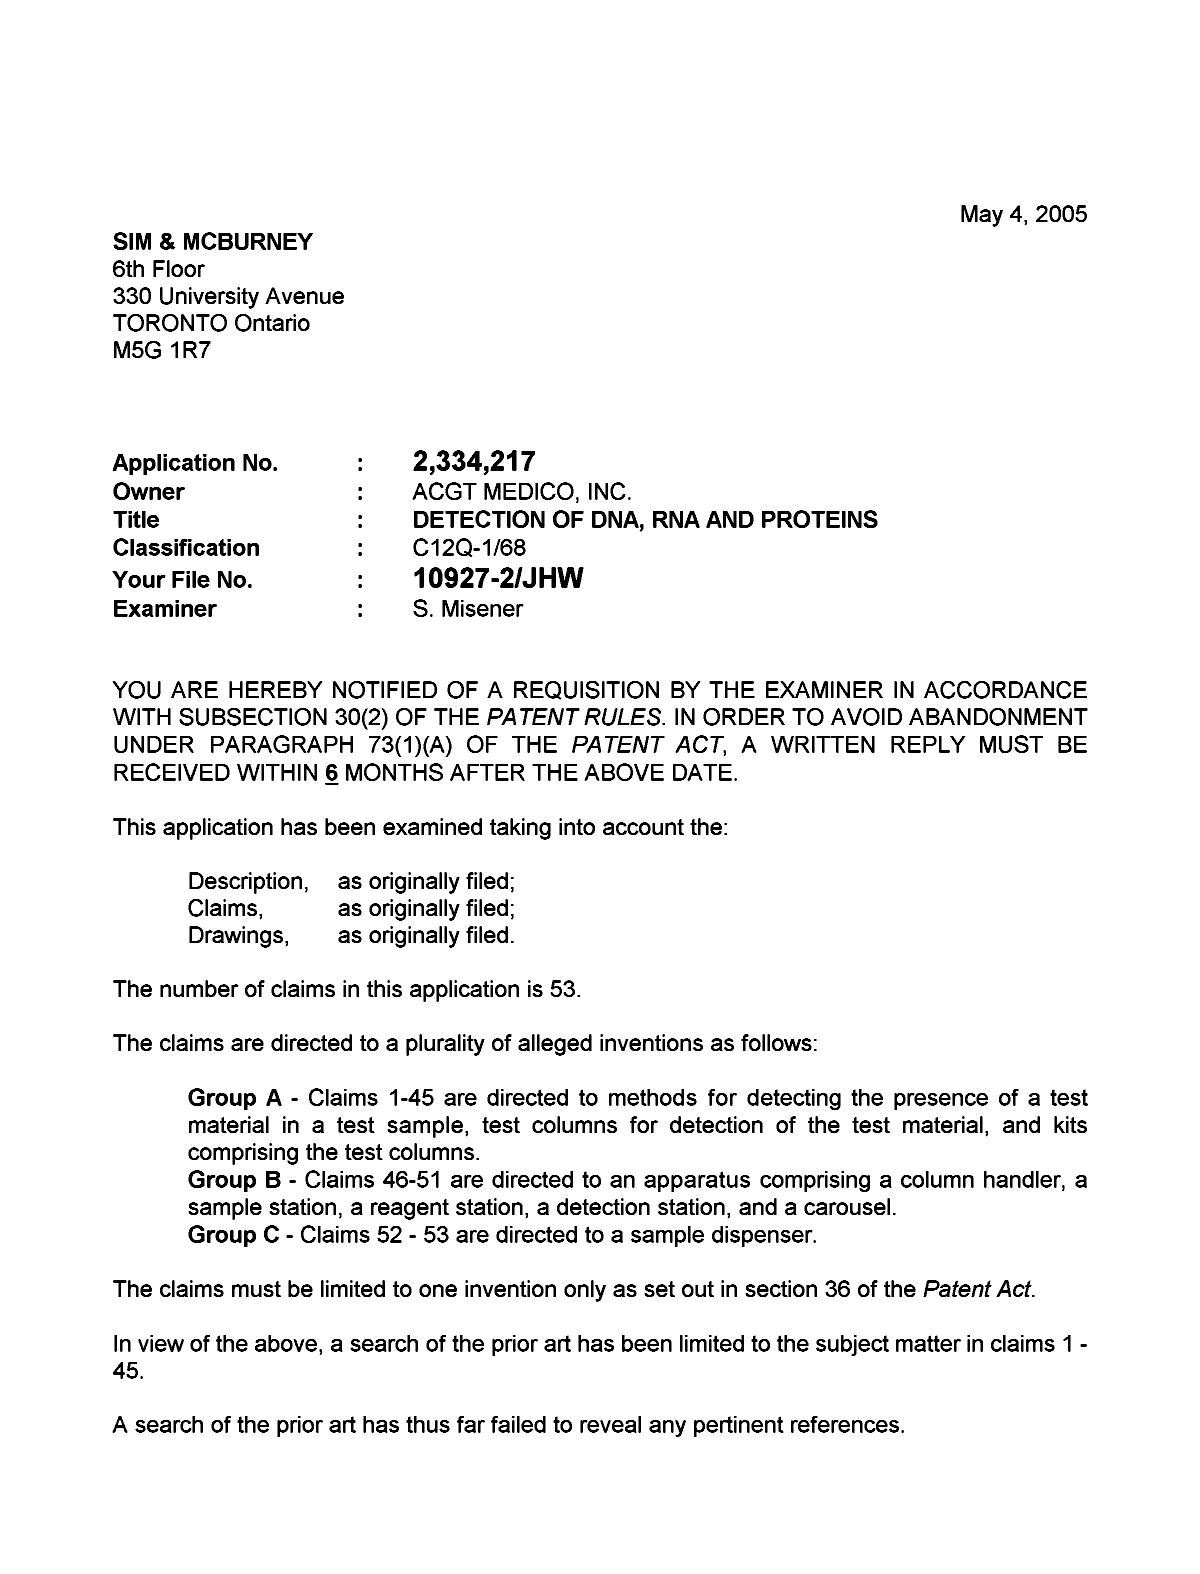 Document de brevet canadien 2334217. Poursuite-Amendment 20050504. Image 1 de 4